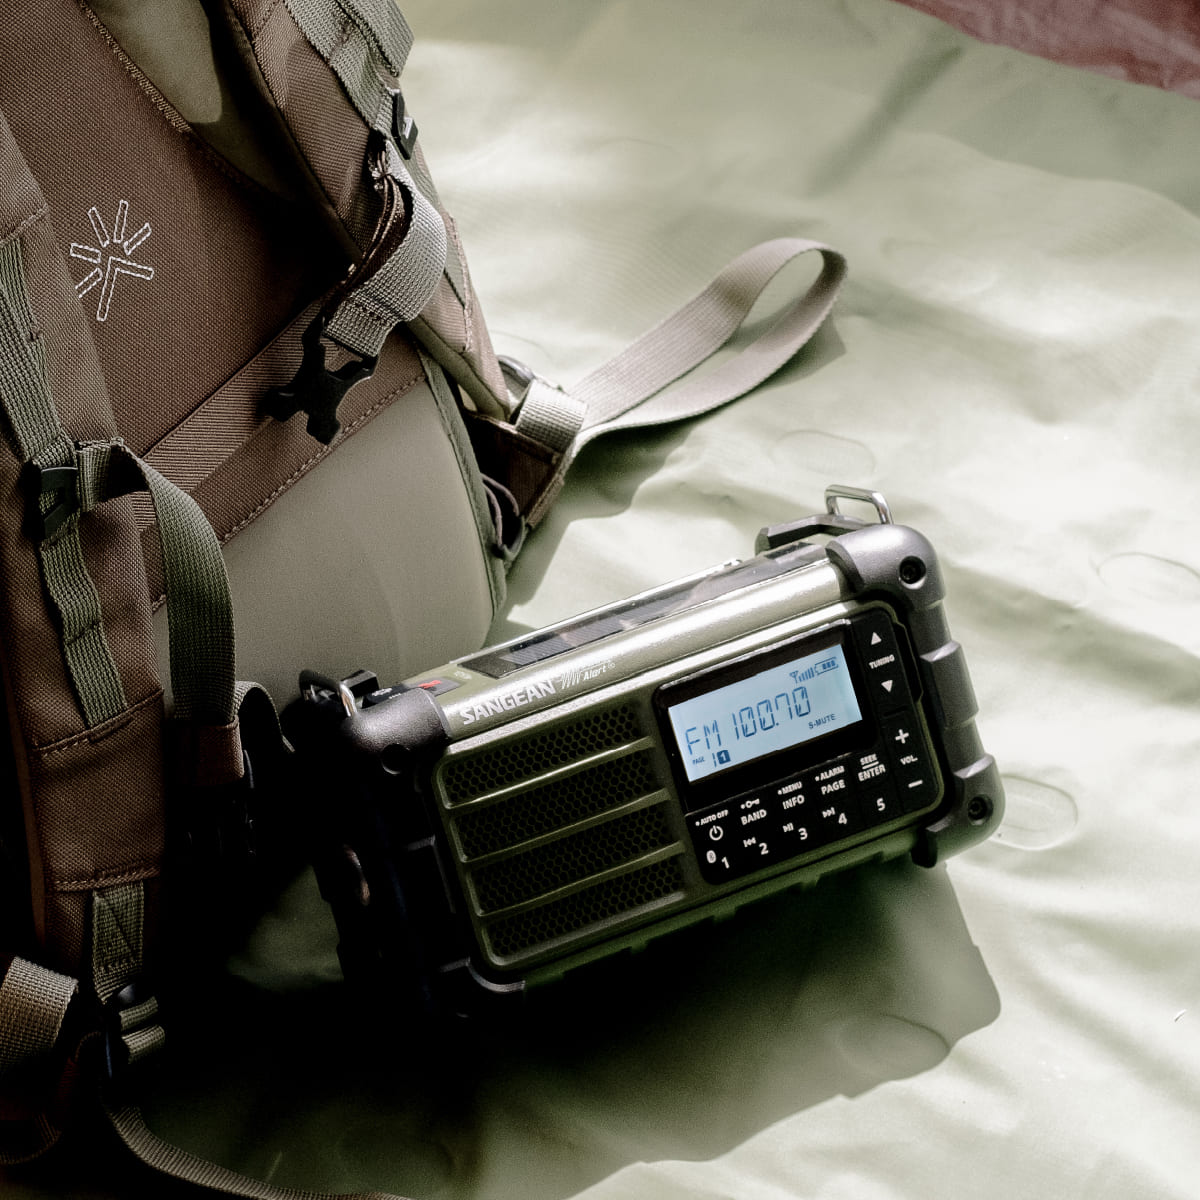 AM/FM-RBDS/Bluetooth/AUX/Weather/Multi-Powered
Digital Tuning Emergency Radio-eSafety Supplies, Inc